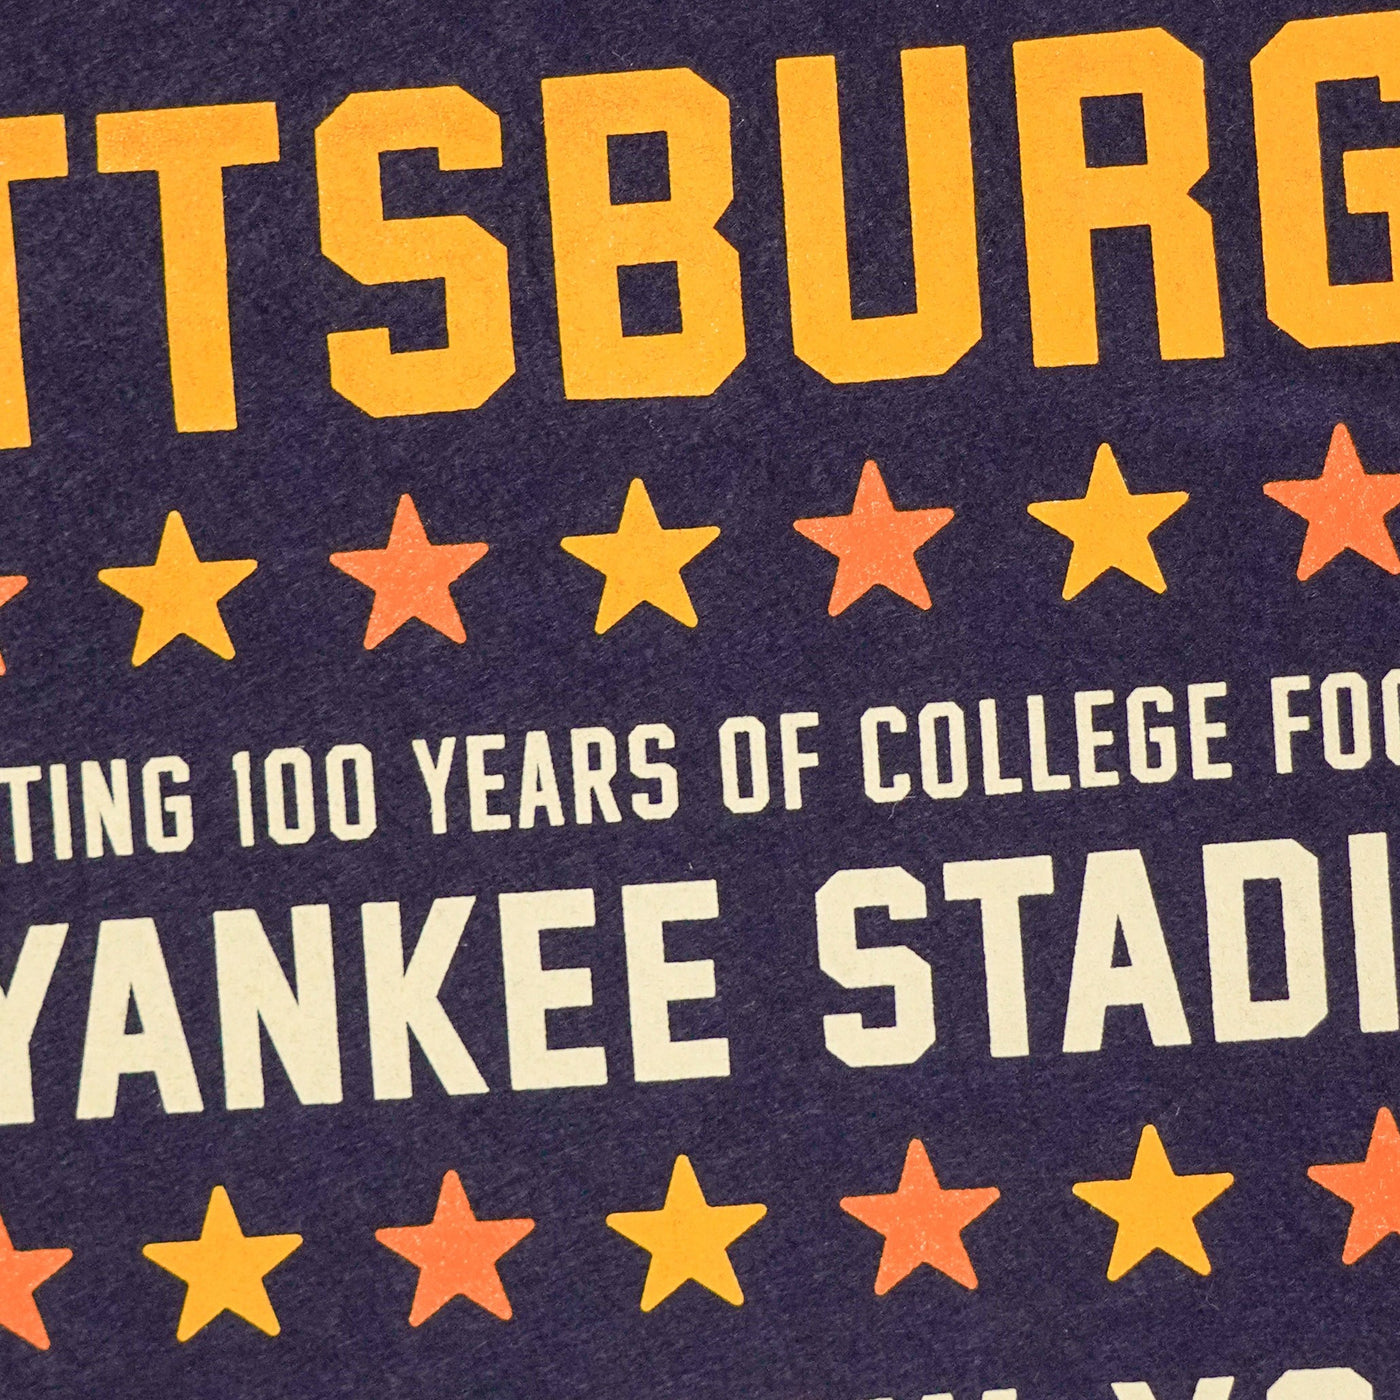 Pitt vs. Syracuse Yankee Stadium Poster Camp Flag